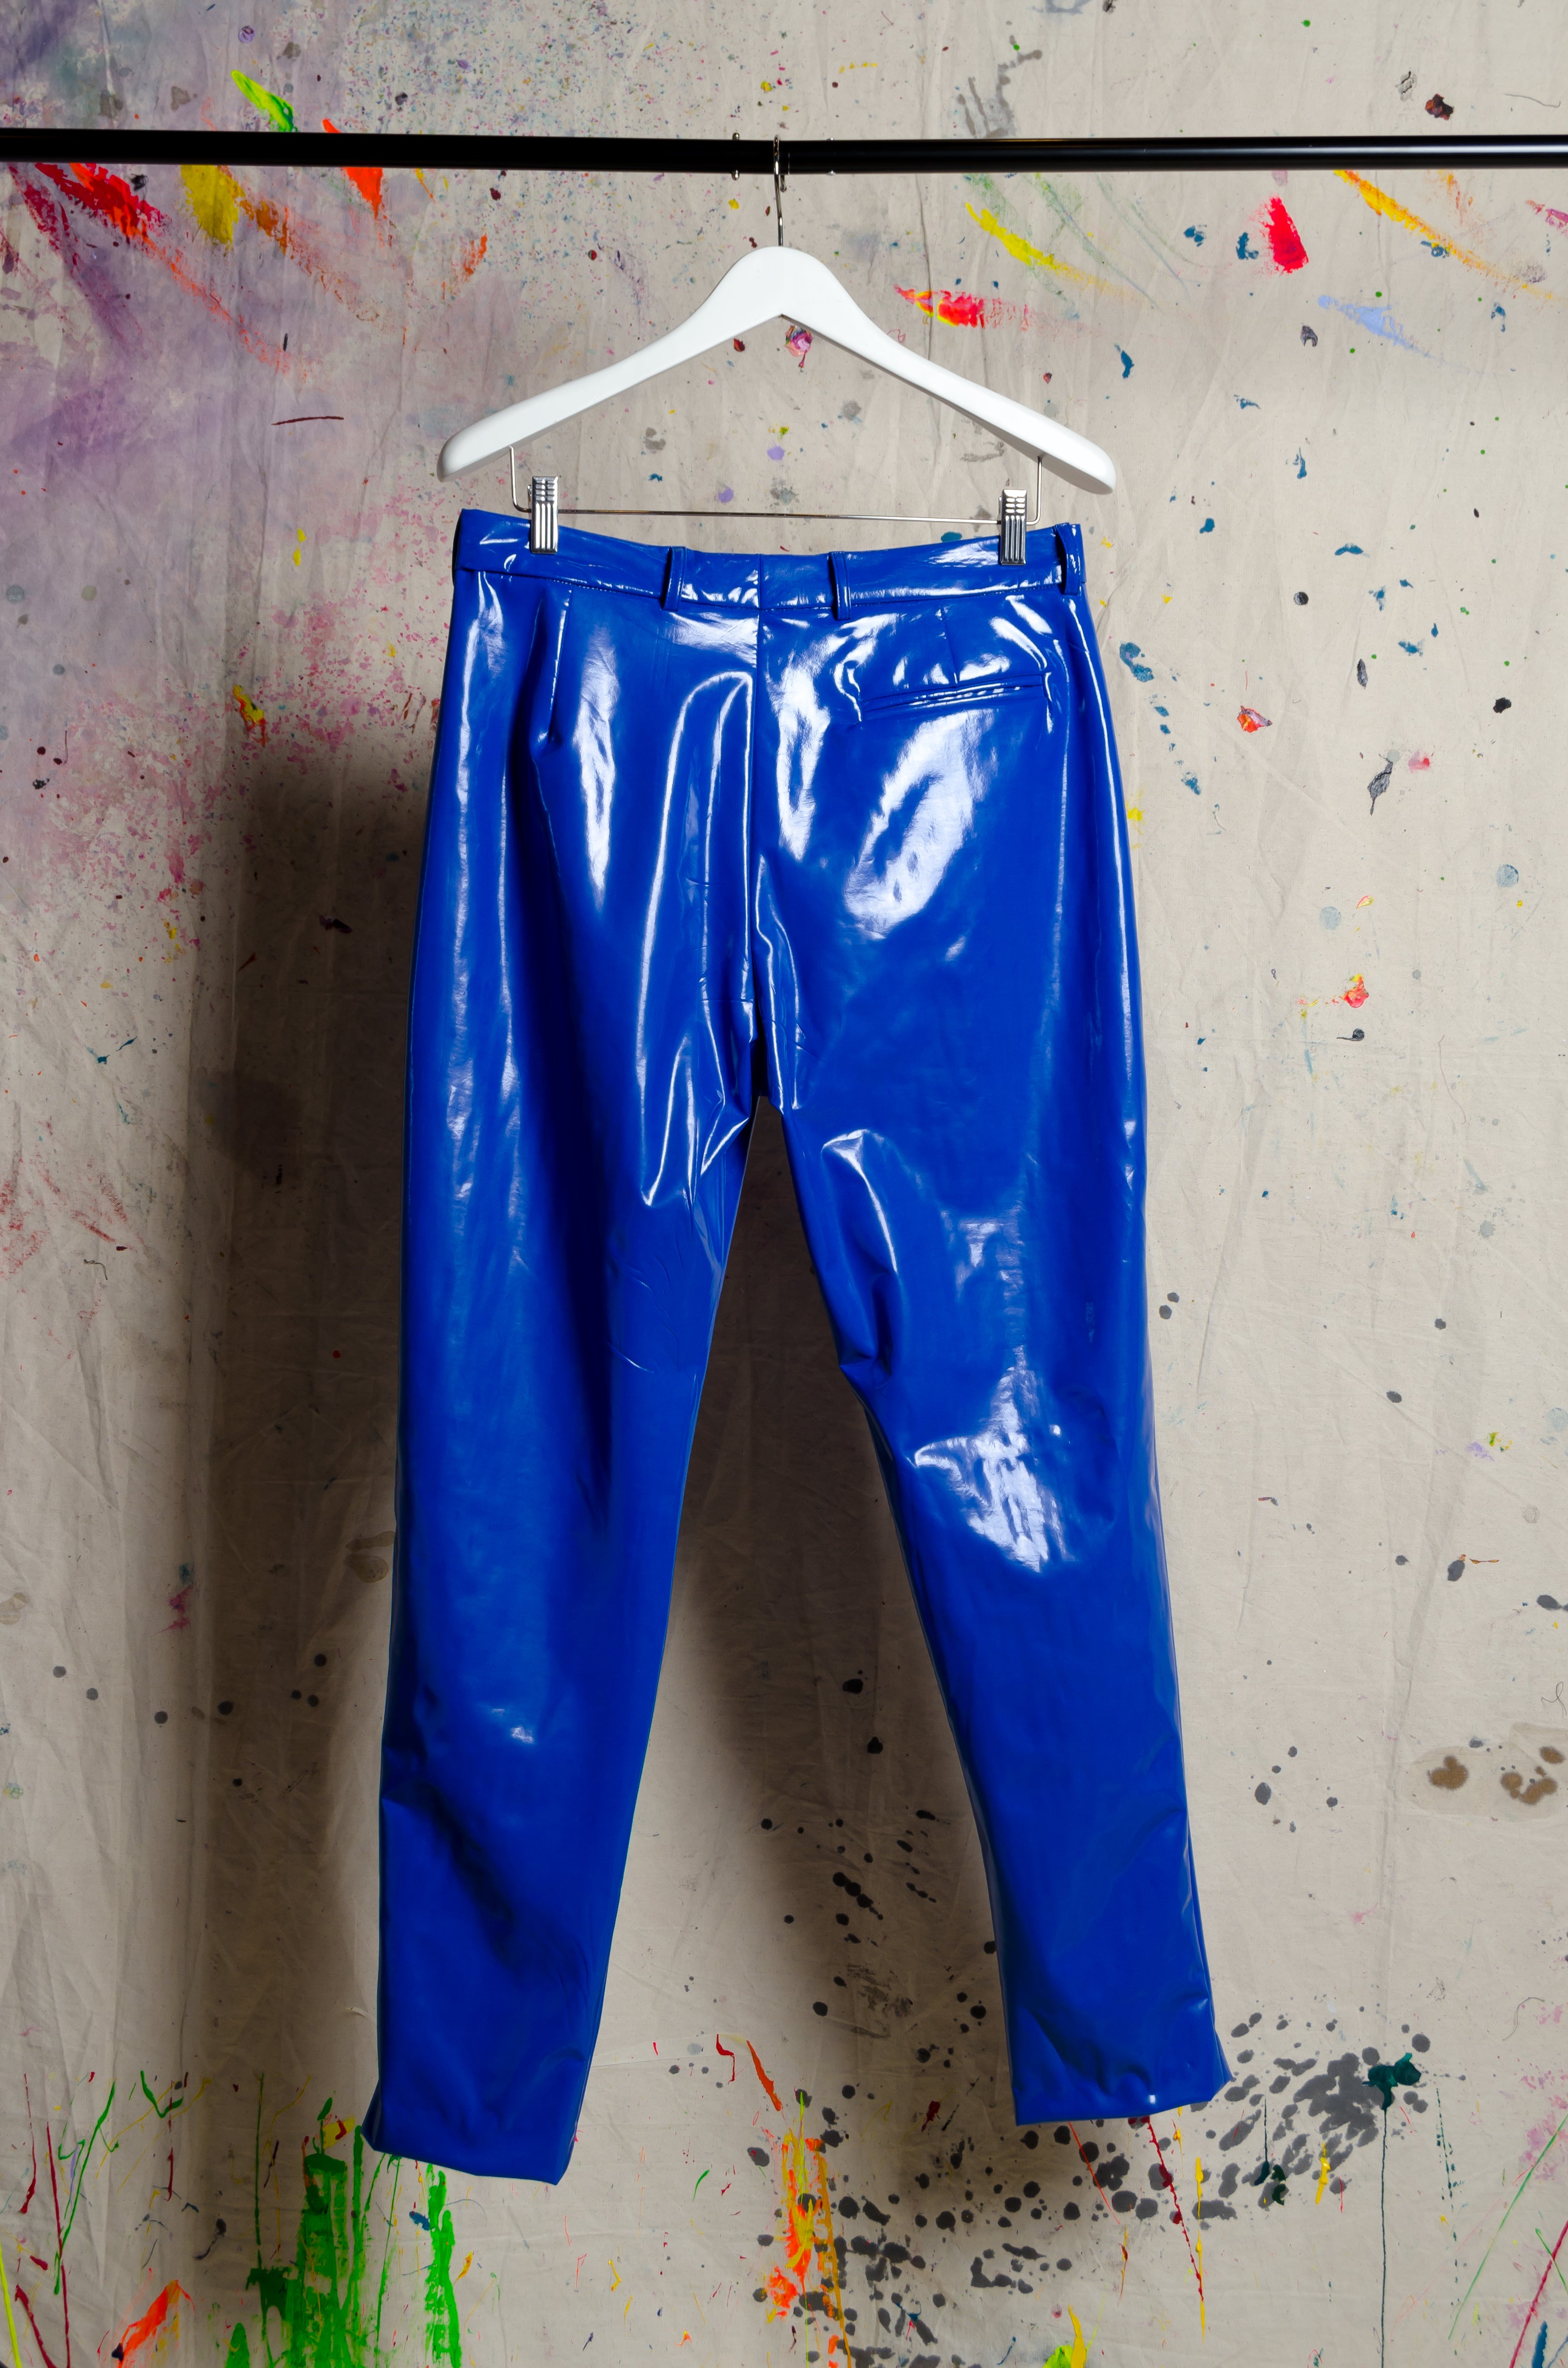 Blue Pants - BiC